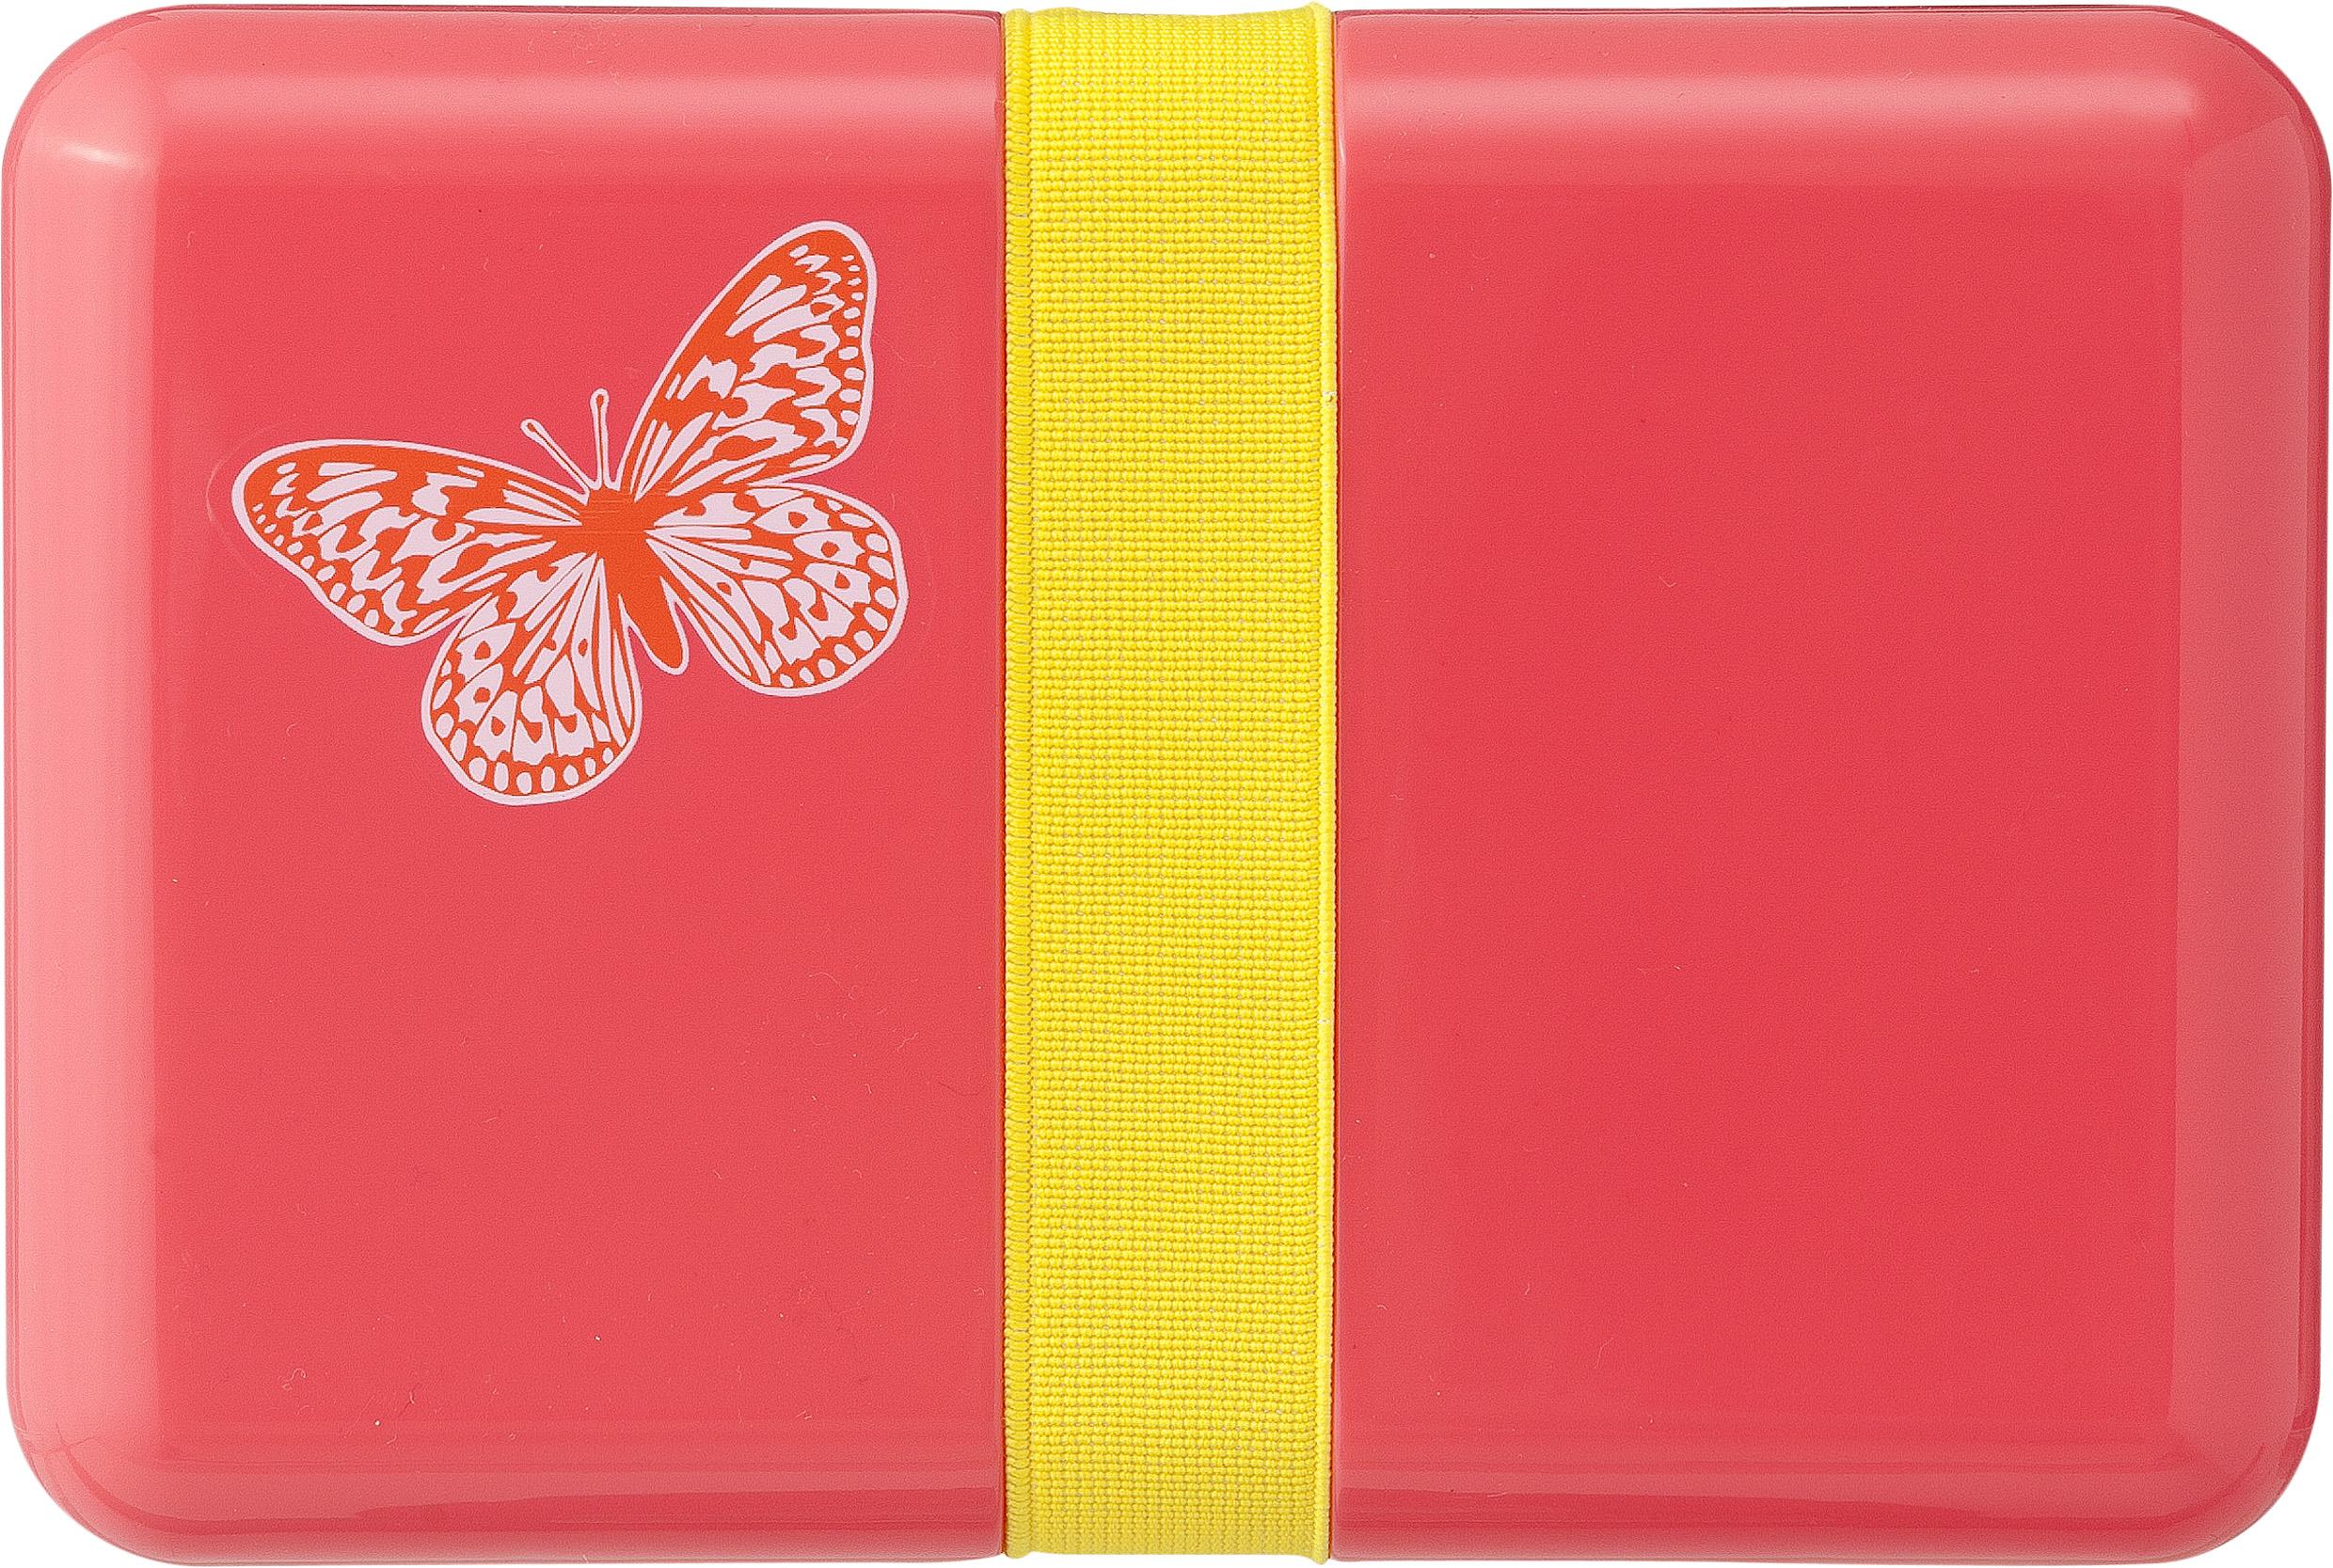 Roze brooddoos met vlinder, € 2,95, Hema